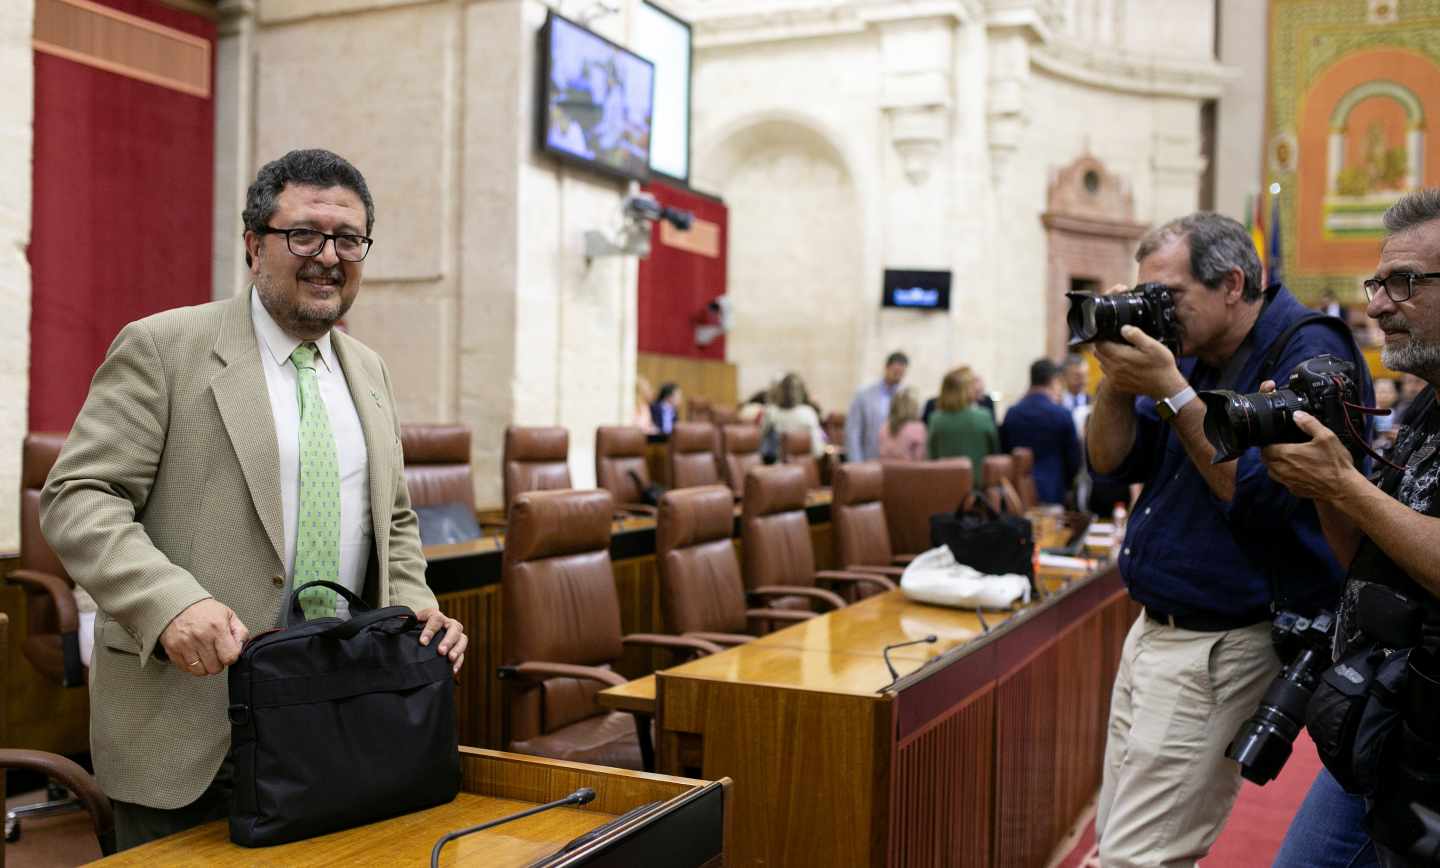 Francisco Serrano, en el hemiciclo del Parlamento de Andalucía.